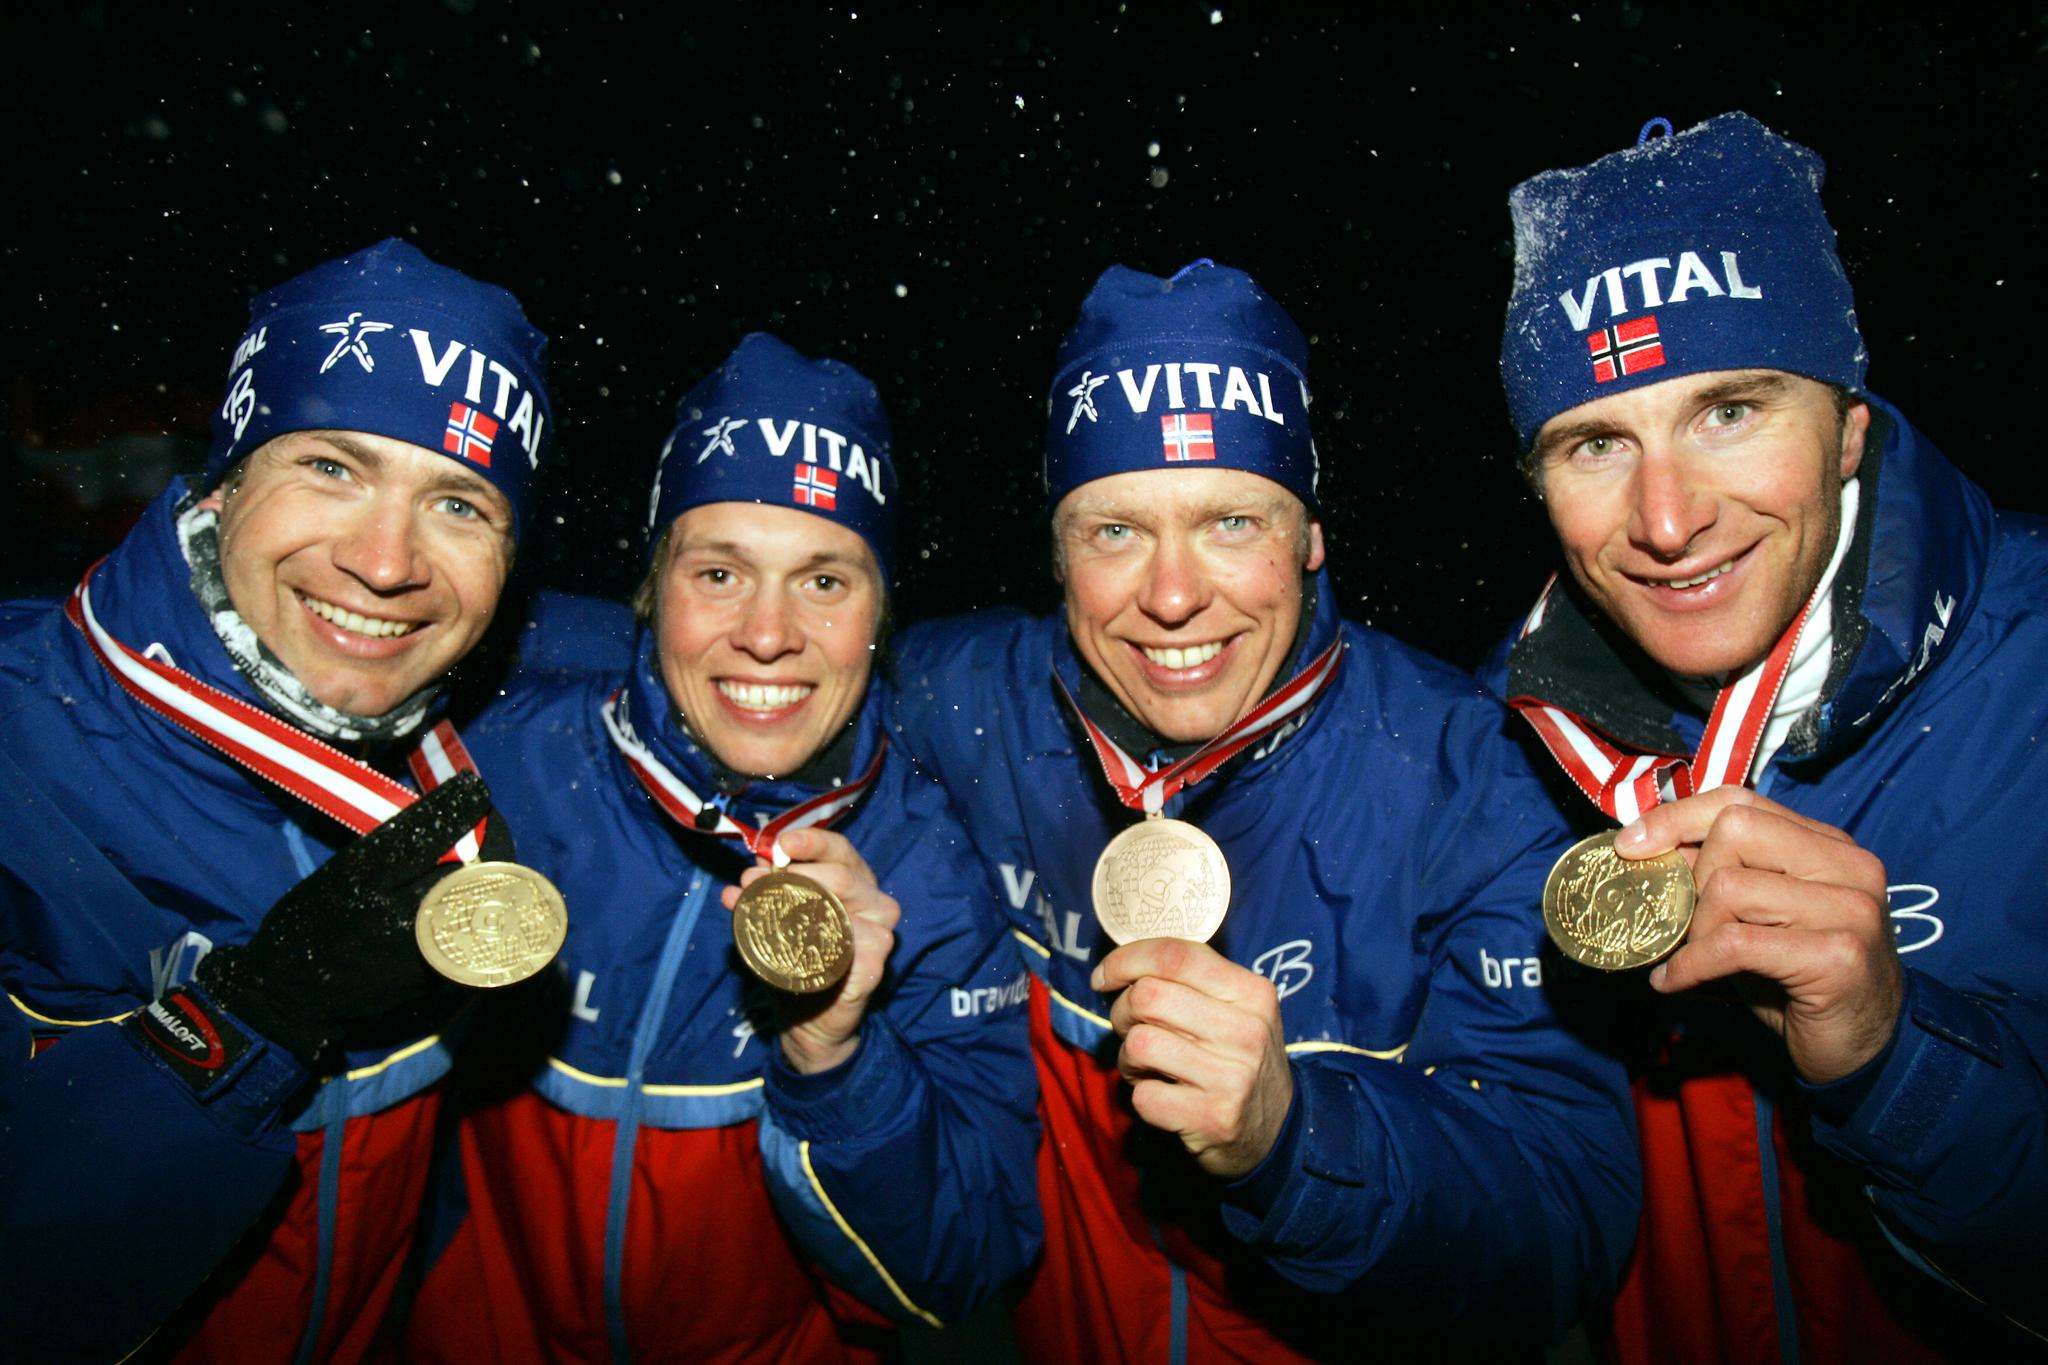 Det norske stafettlaget med VM-gullmedaljer etter stafettseieren i Hochfilzen i 2005. Fra venstre: Ole Einar Bjørndalen, Stian Eckhoff, Halvard Hanevold og Egil Gjelland.